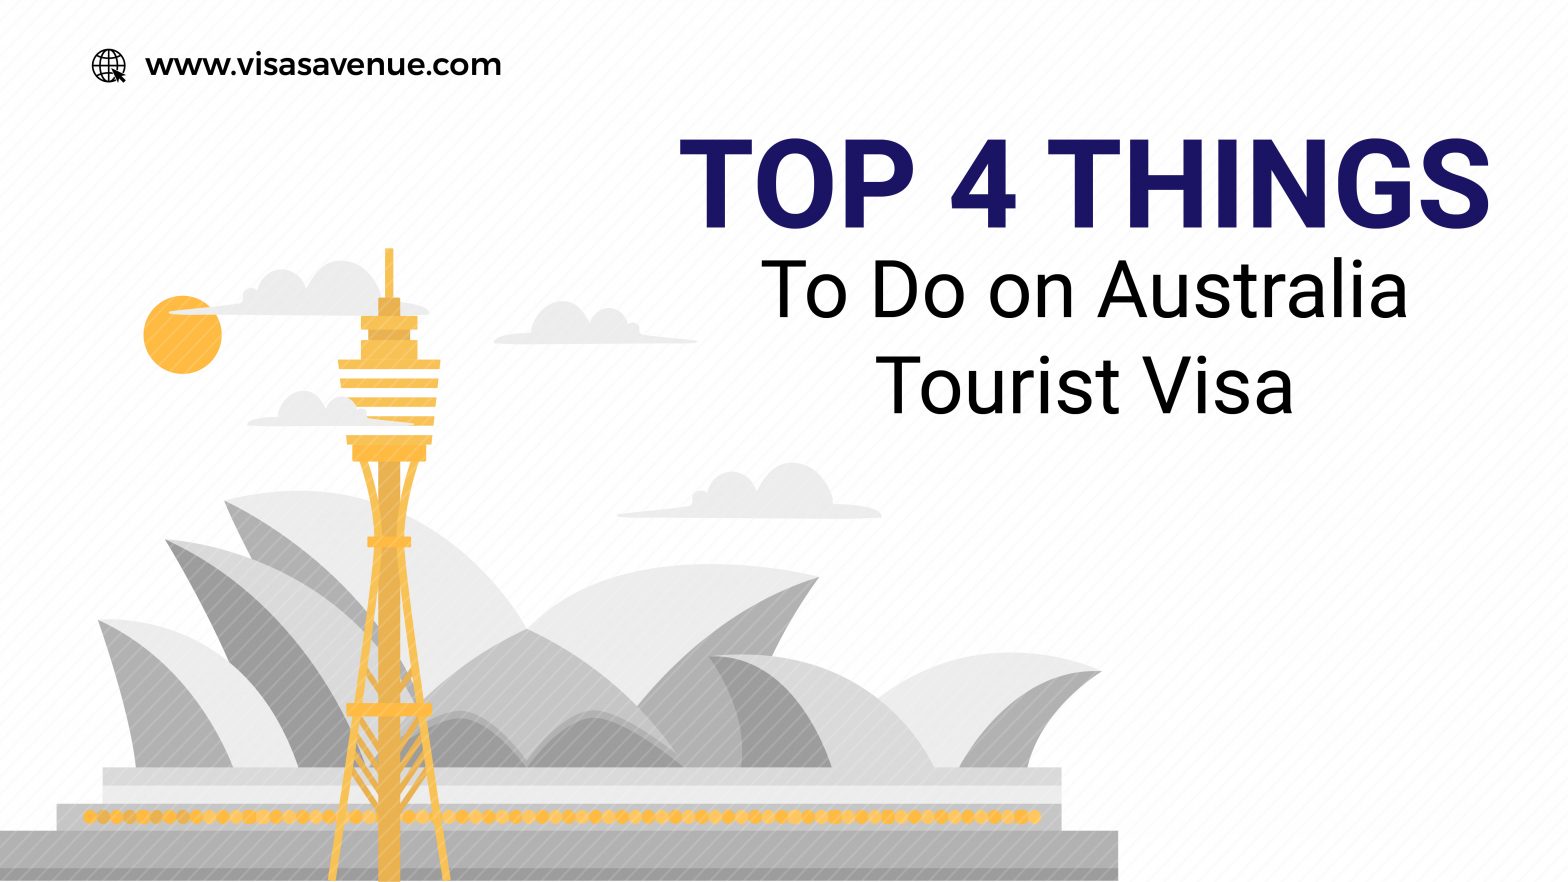 Top 4 Things to Do on Australia Tourist Visa